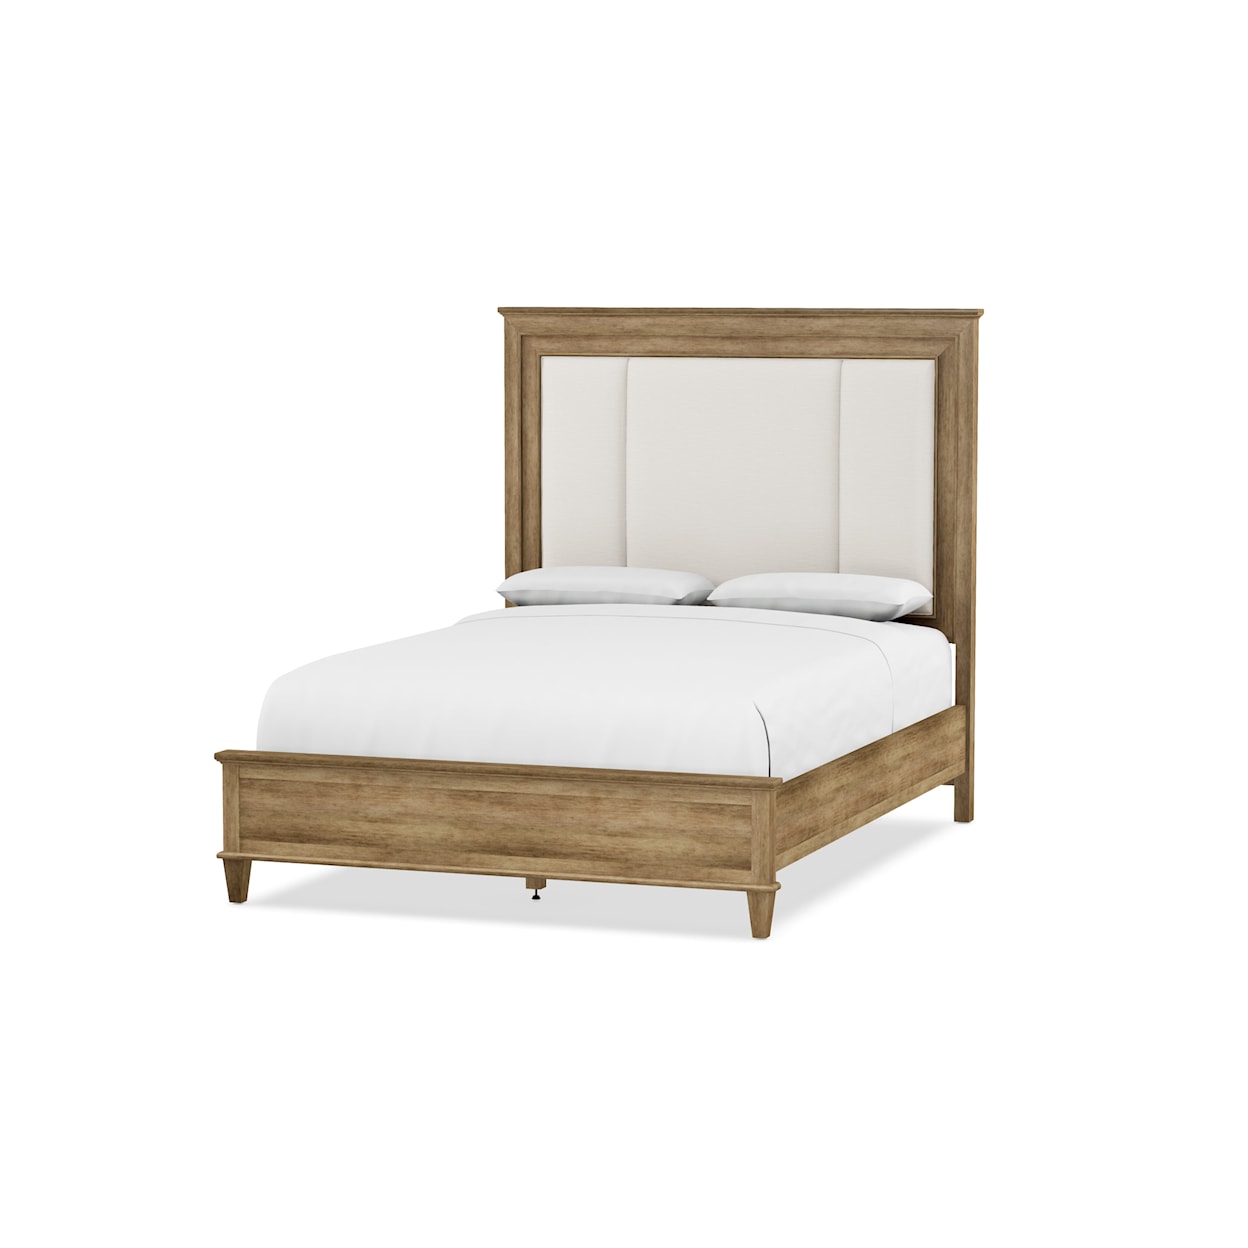 Durham Lakeridge Upholstered Queen Bed